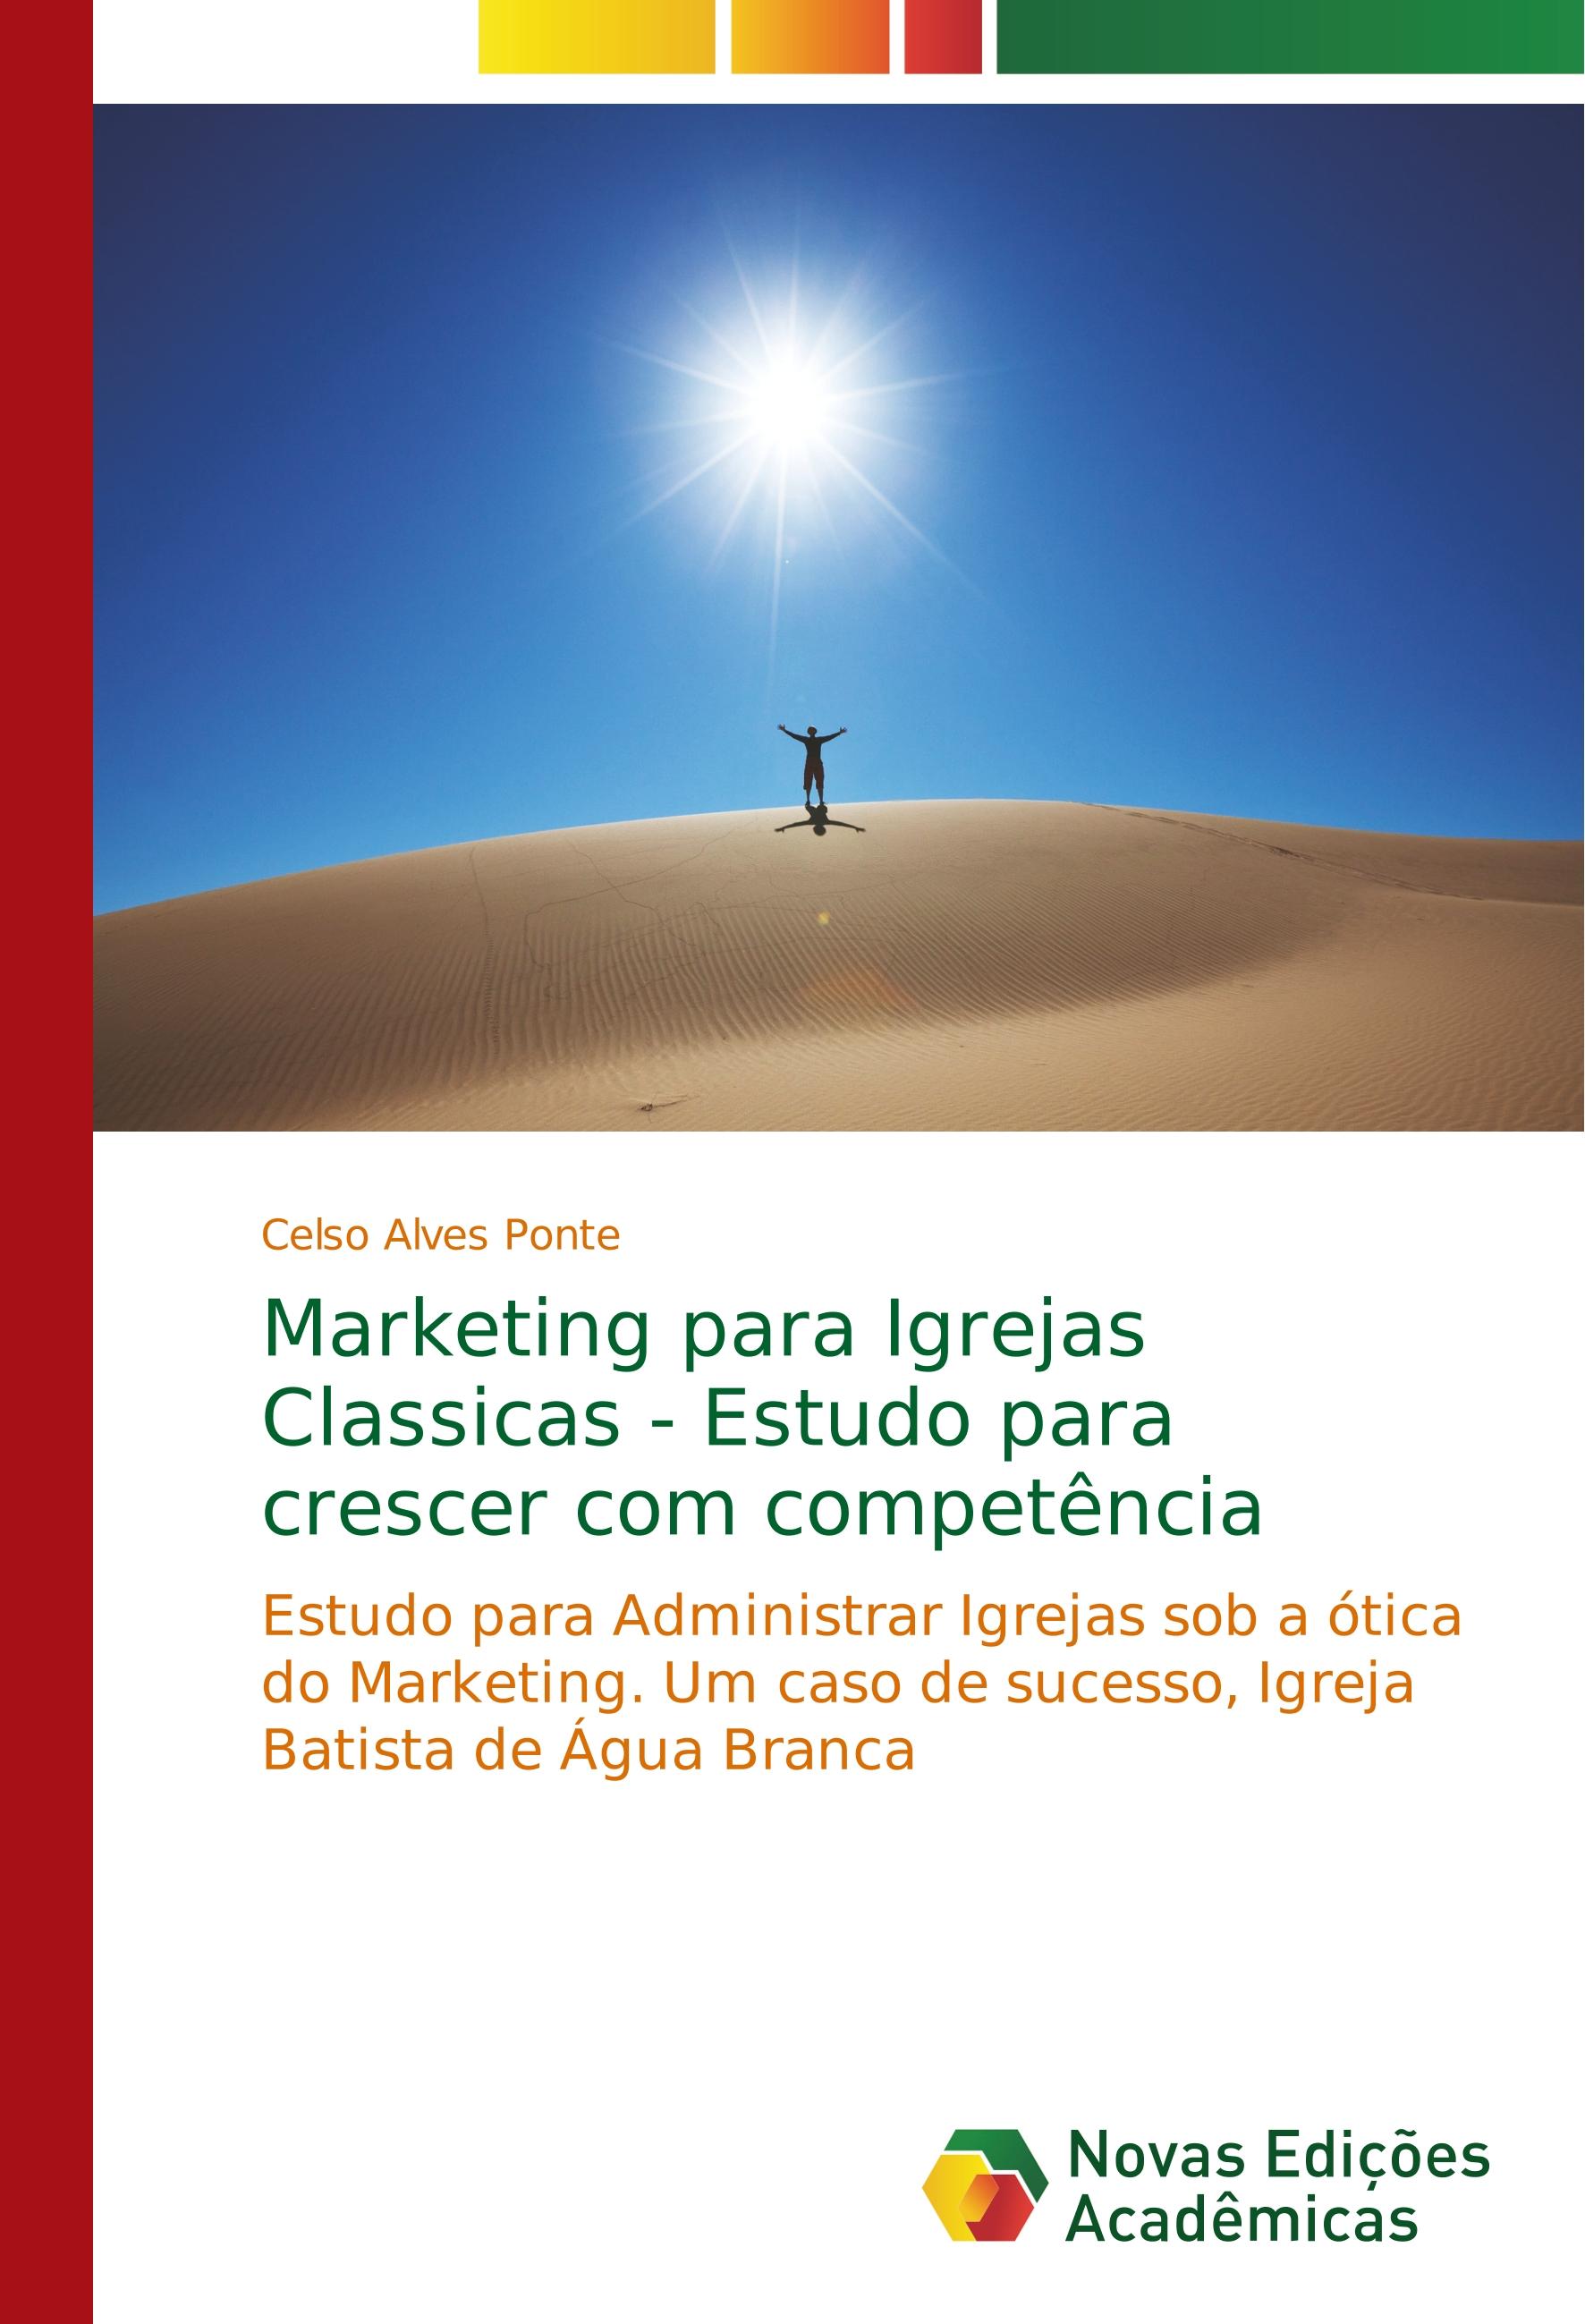 Marketing para Igrejas Classicas - Estudo para crescer com competência - Celso Alves Ponte